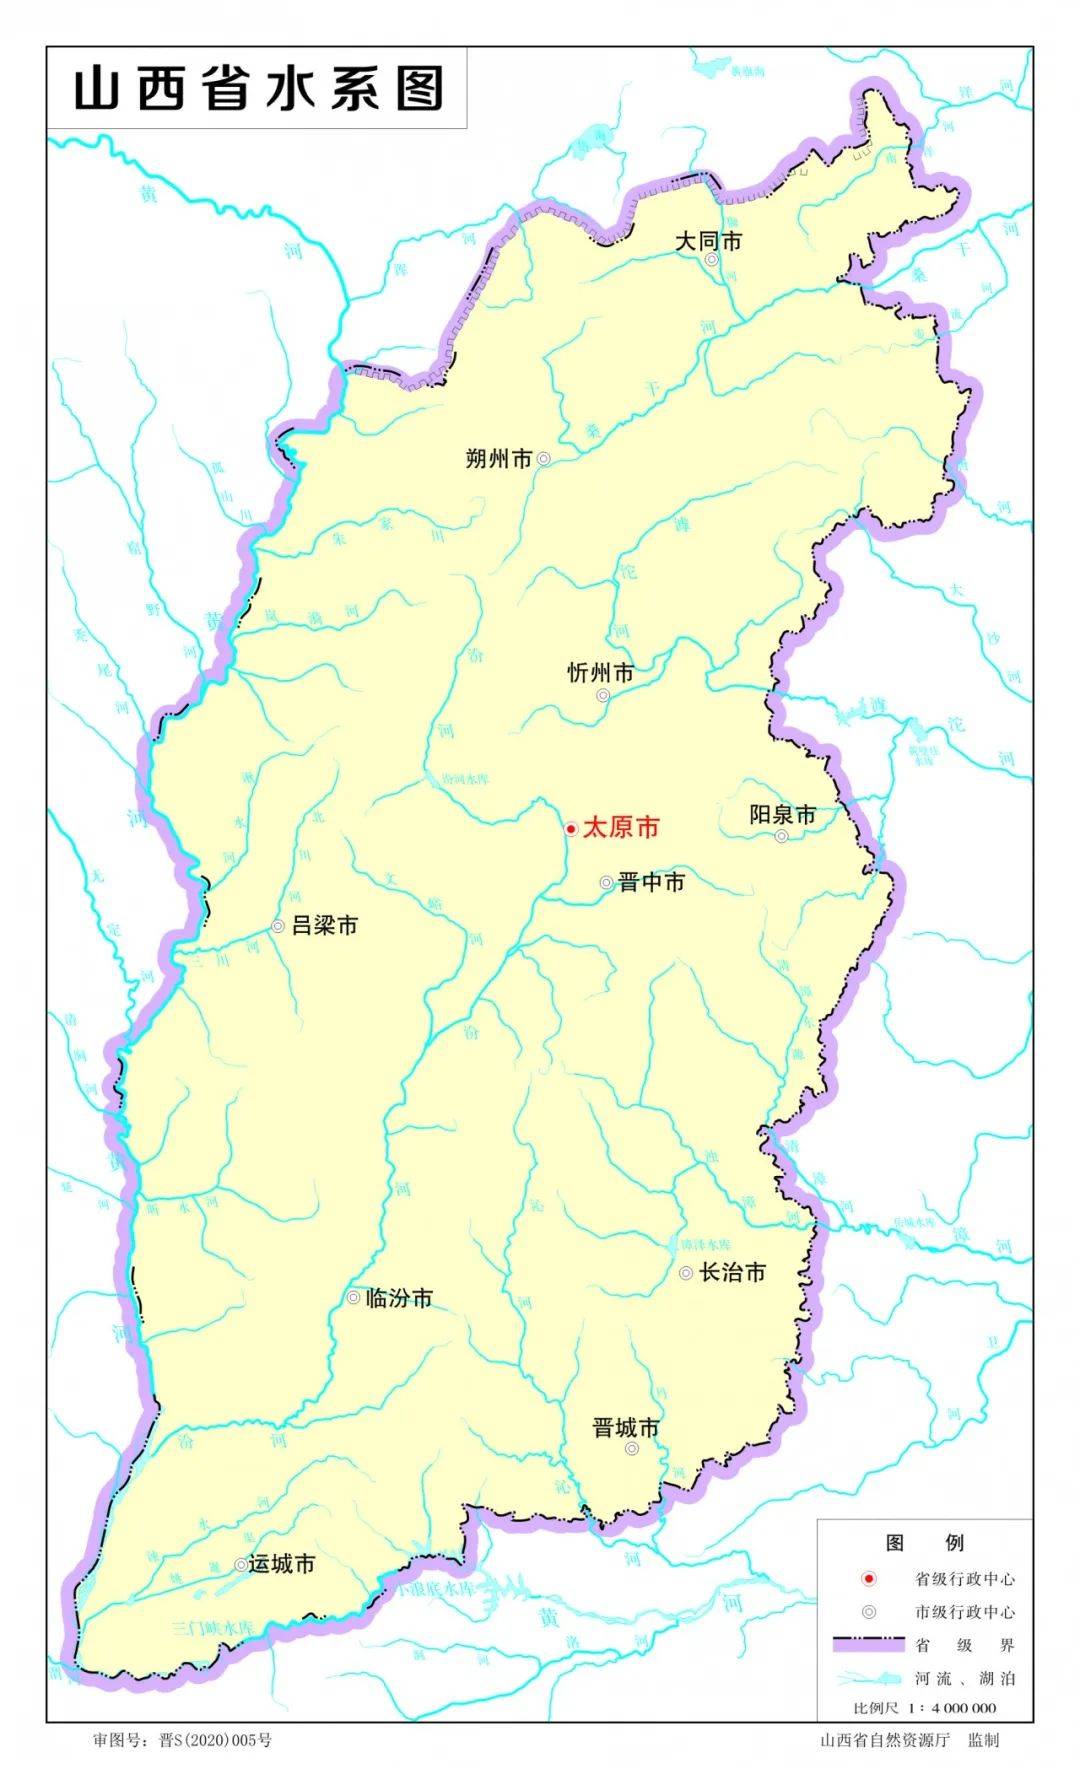 2020版山西省标准地图发布增加了示意图和水系图